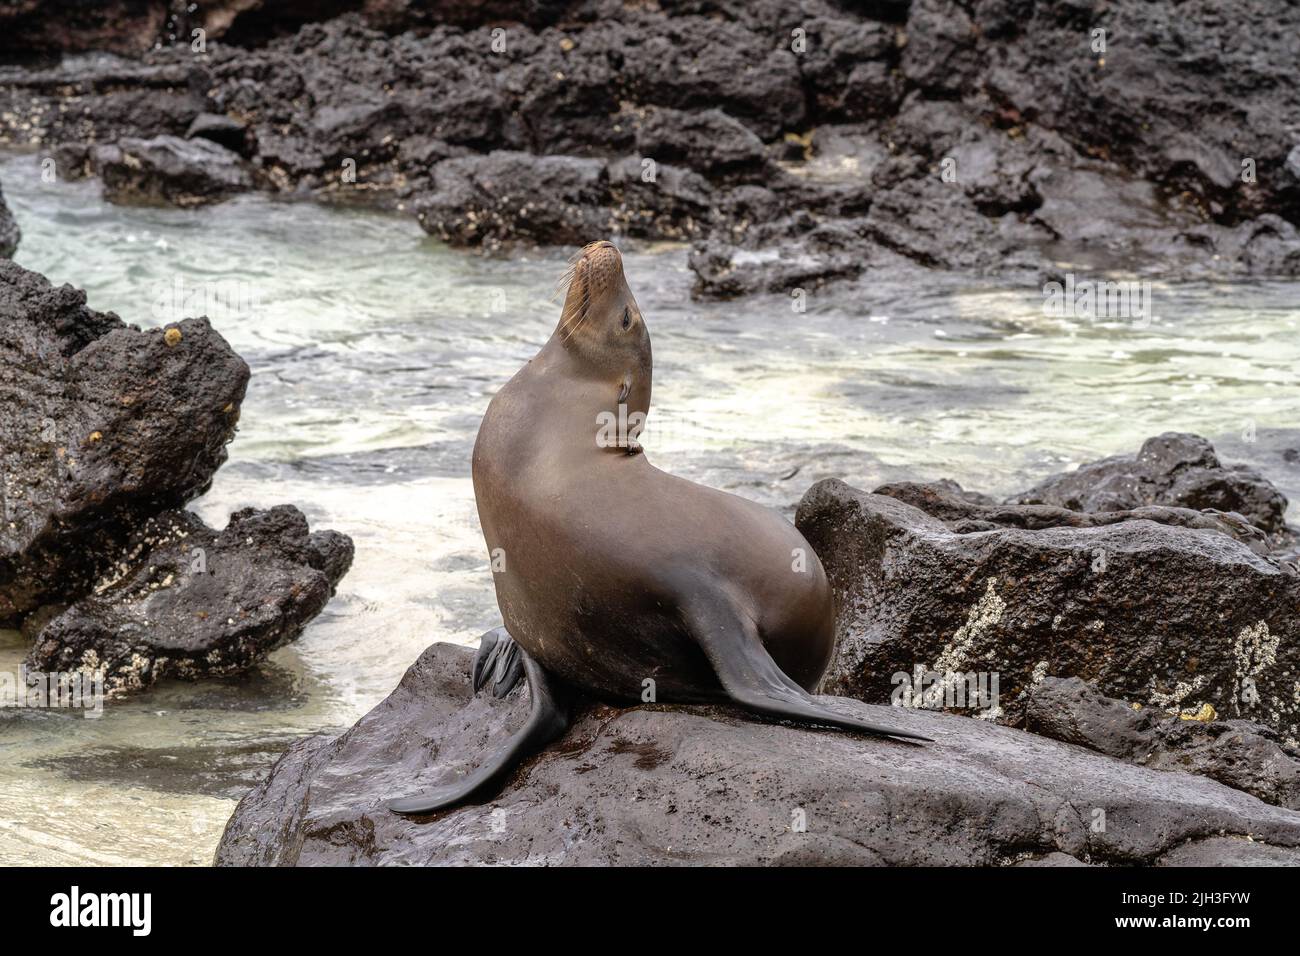 Le Sea lion est installé sur une plage volcanique rocheuse dans les Galapagos, avec son dos voûté Banque D'Images